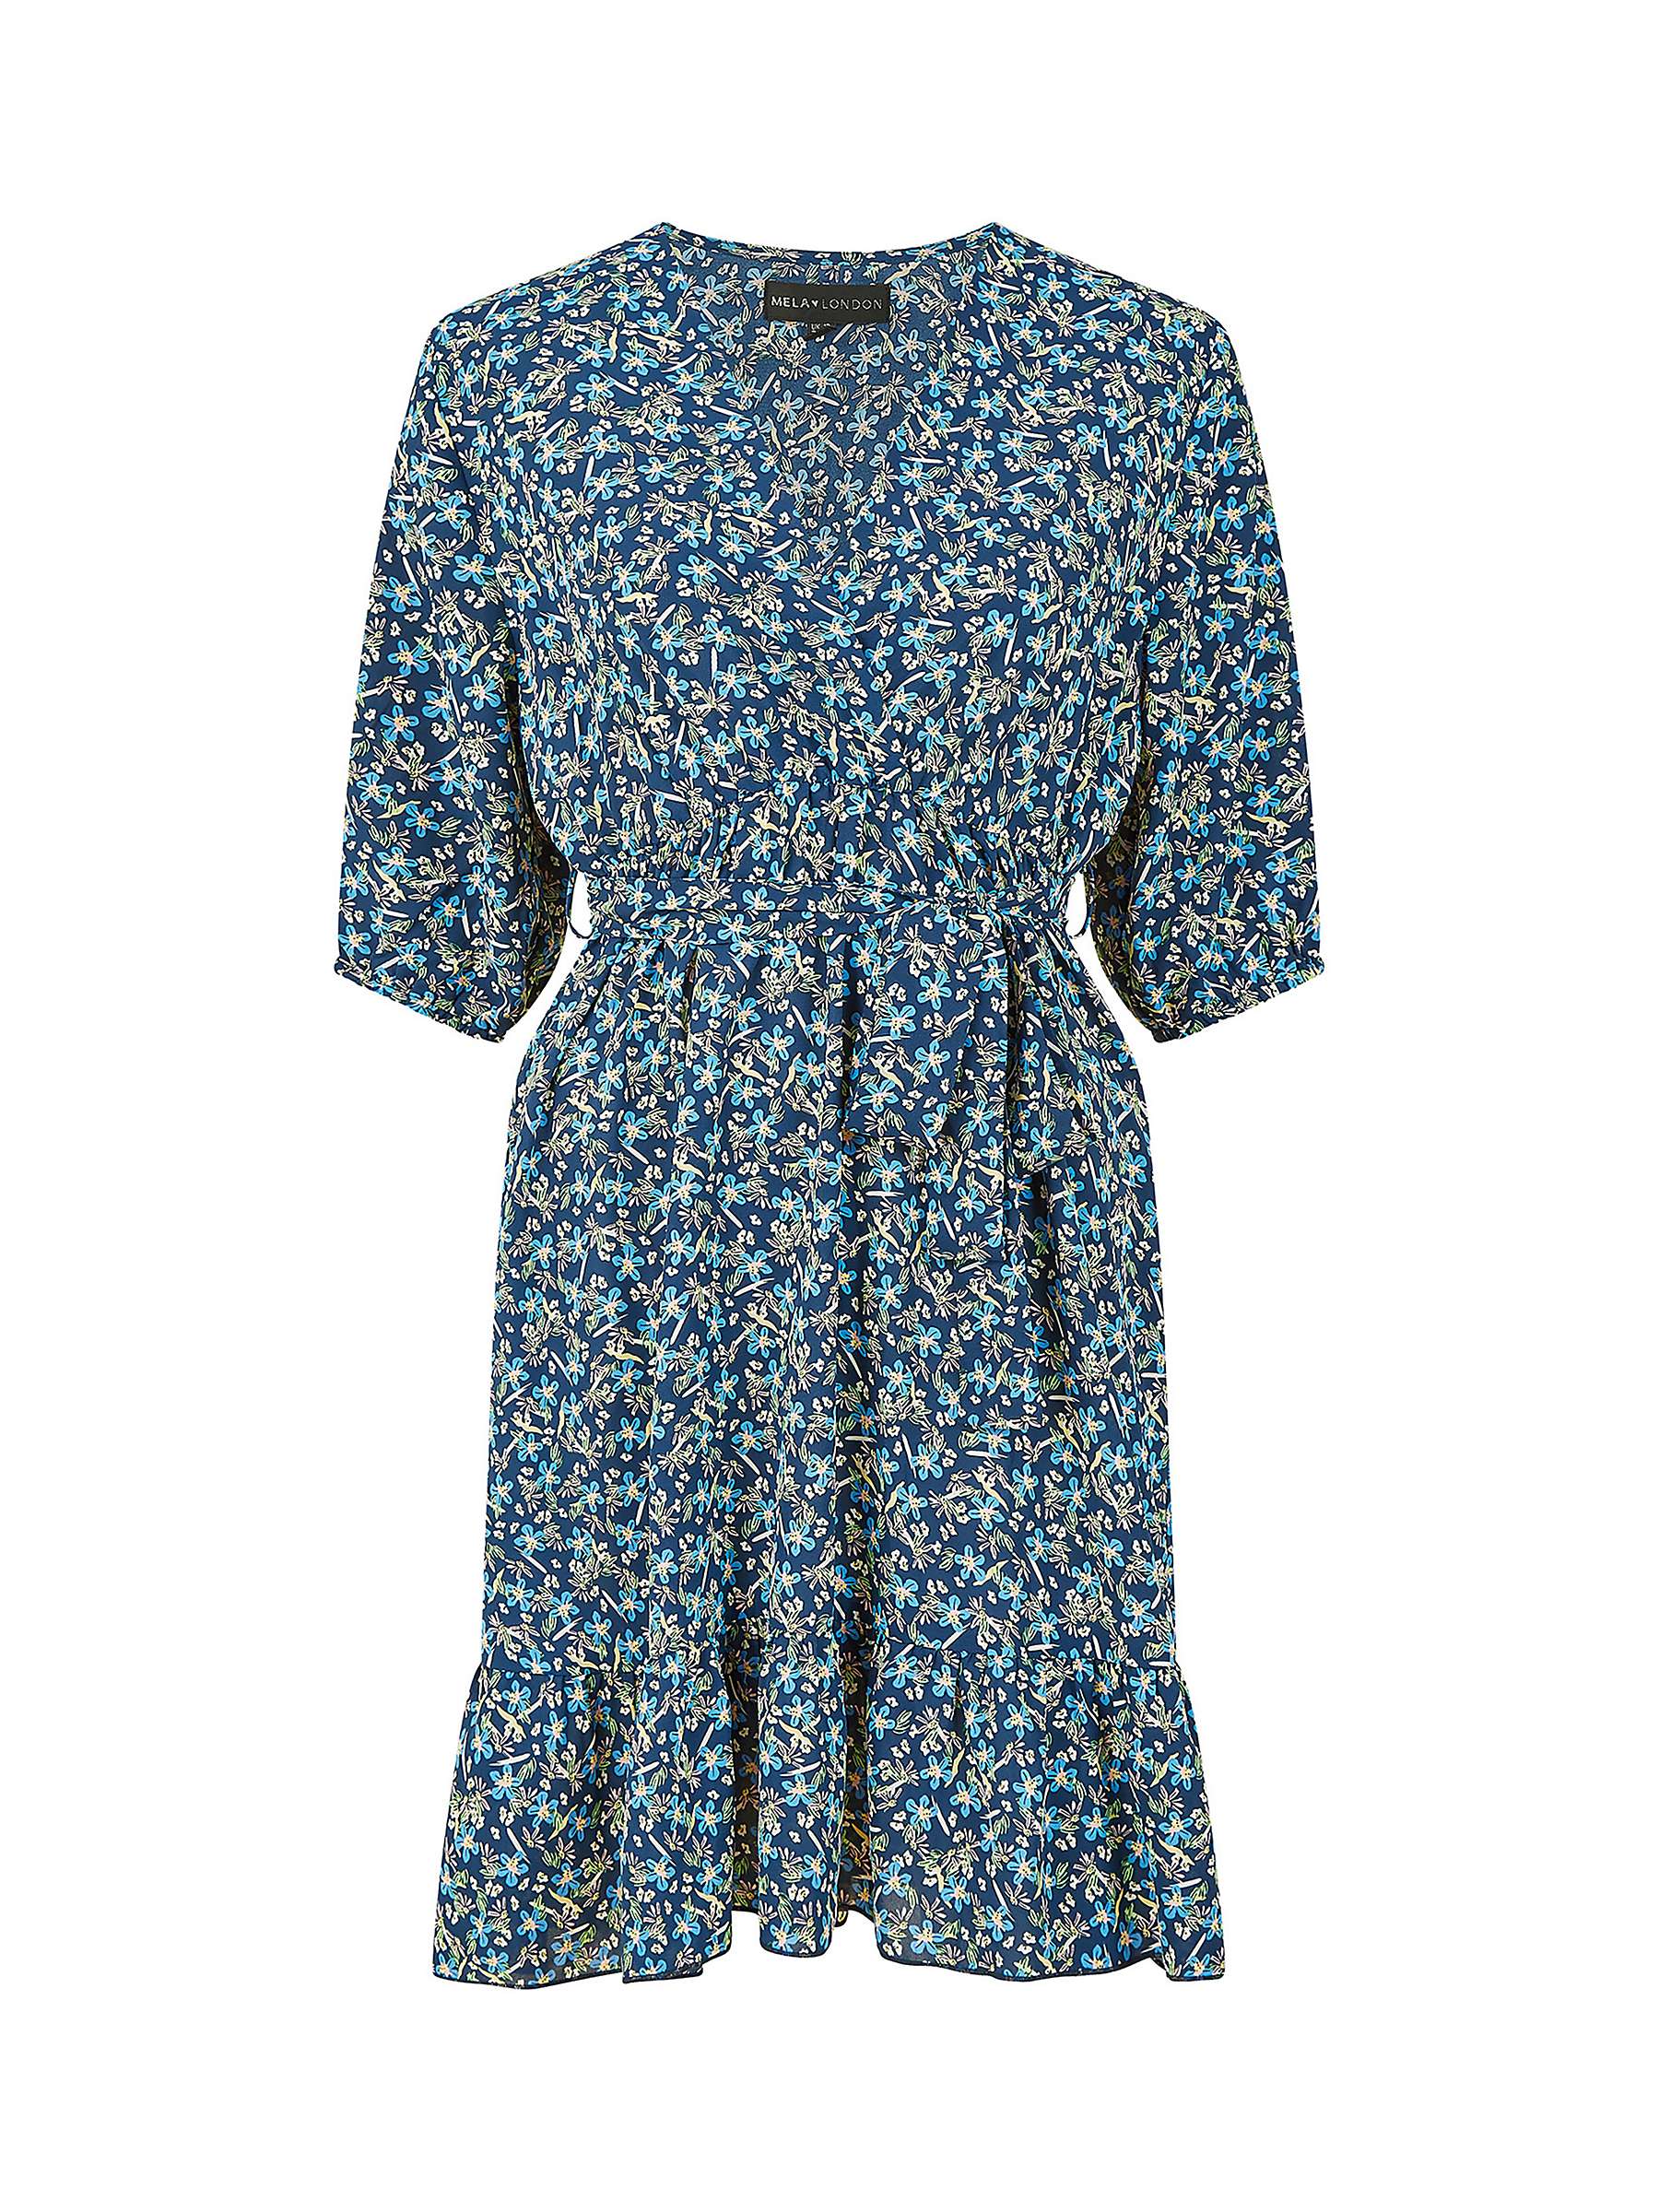 Buy Mela London Ditsy Floral Wrap Skater Dress, Blue Online at johnlewis.com